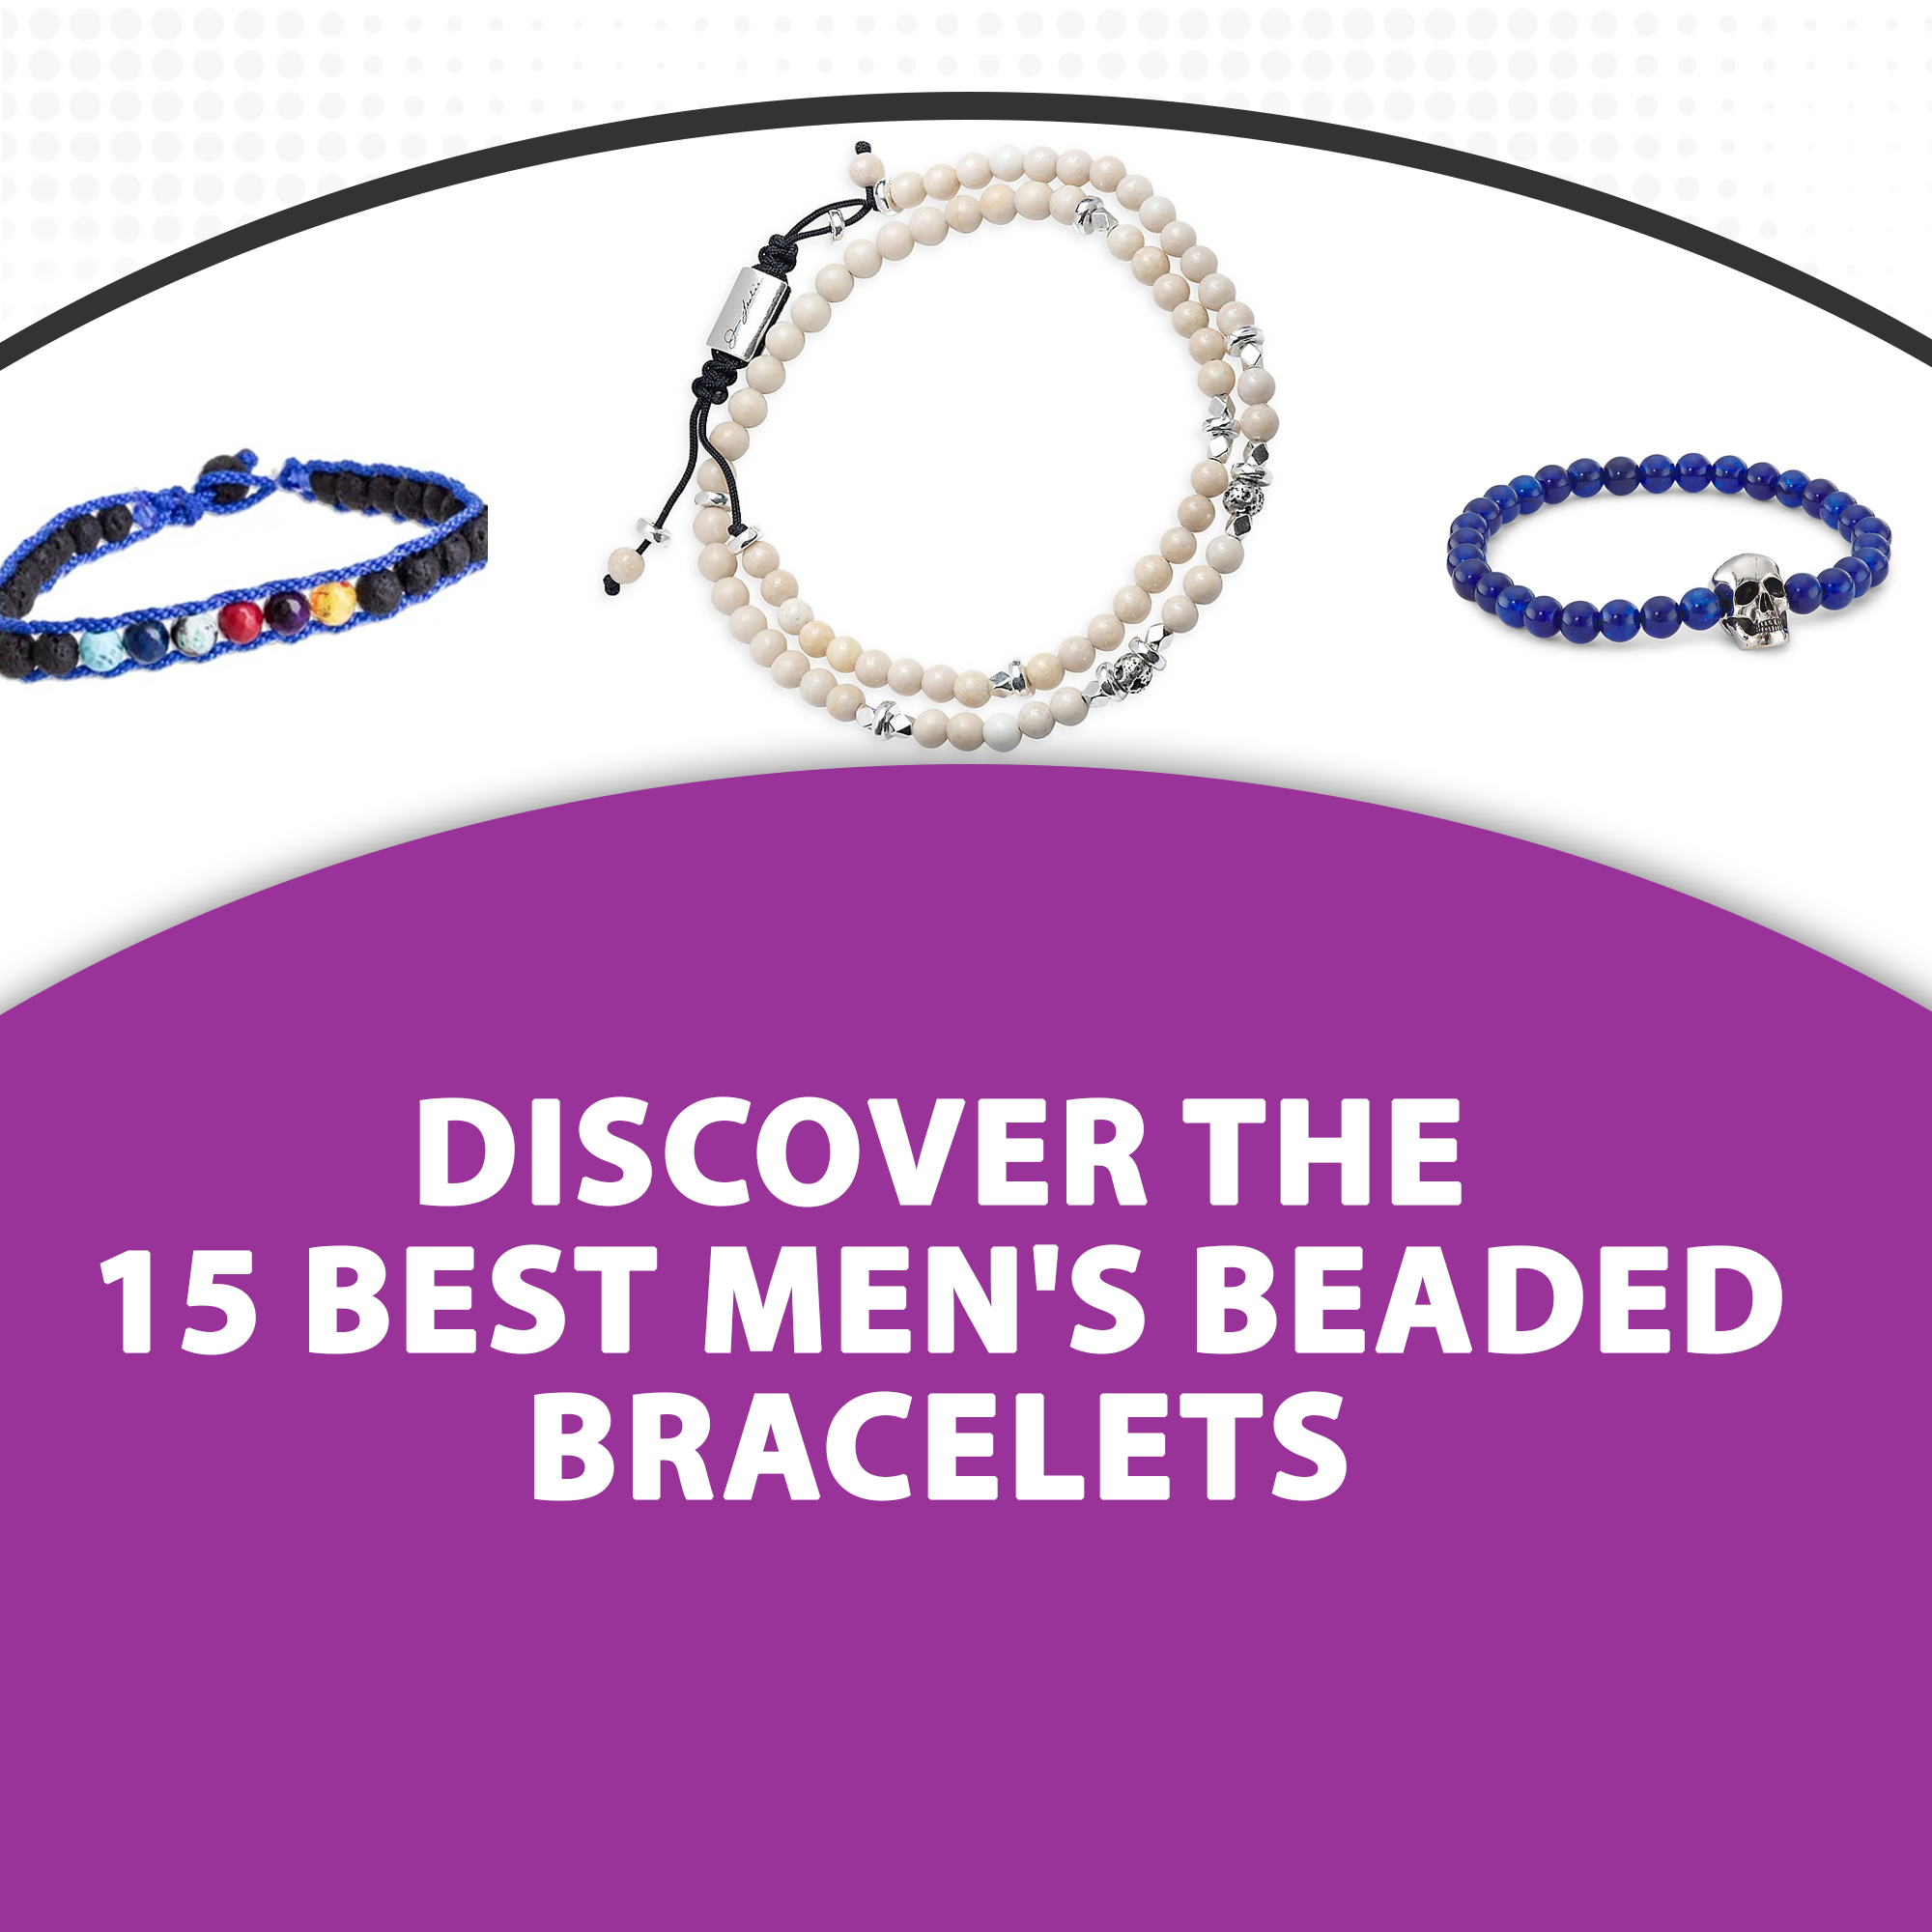 Discover the 15 Best Men’s Beaded Bracelets